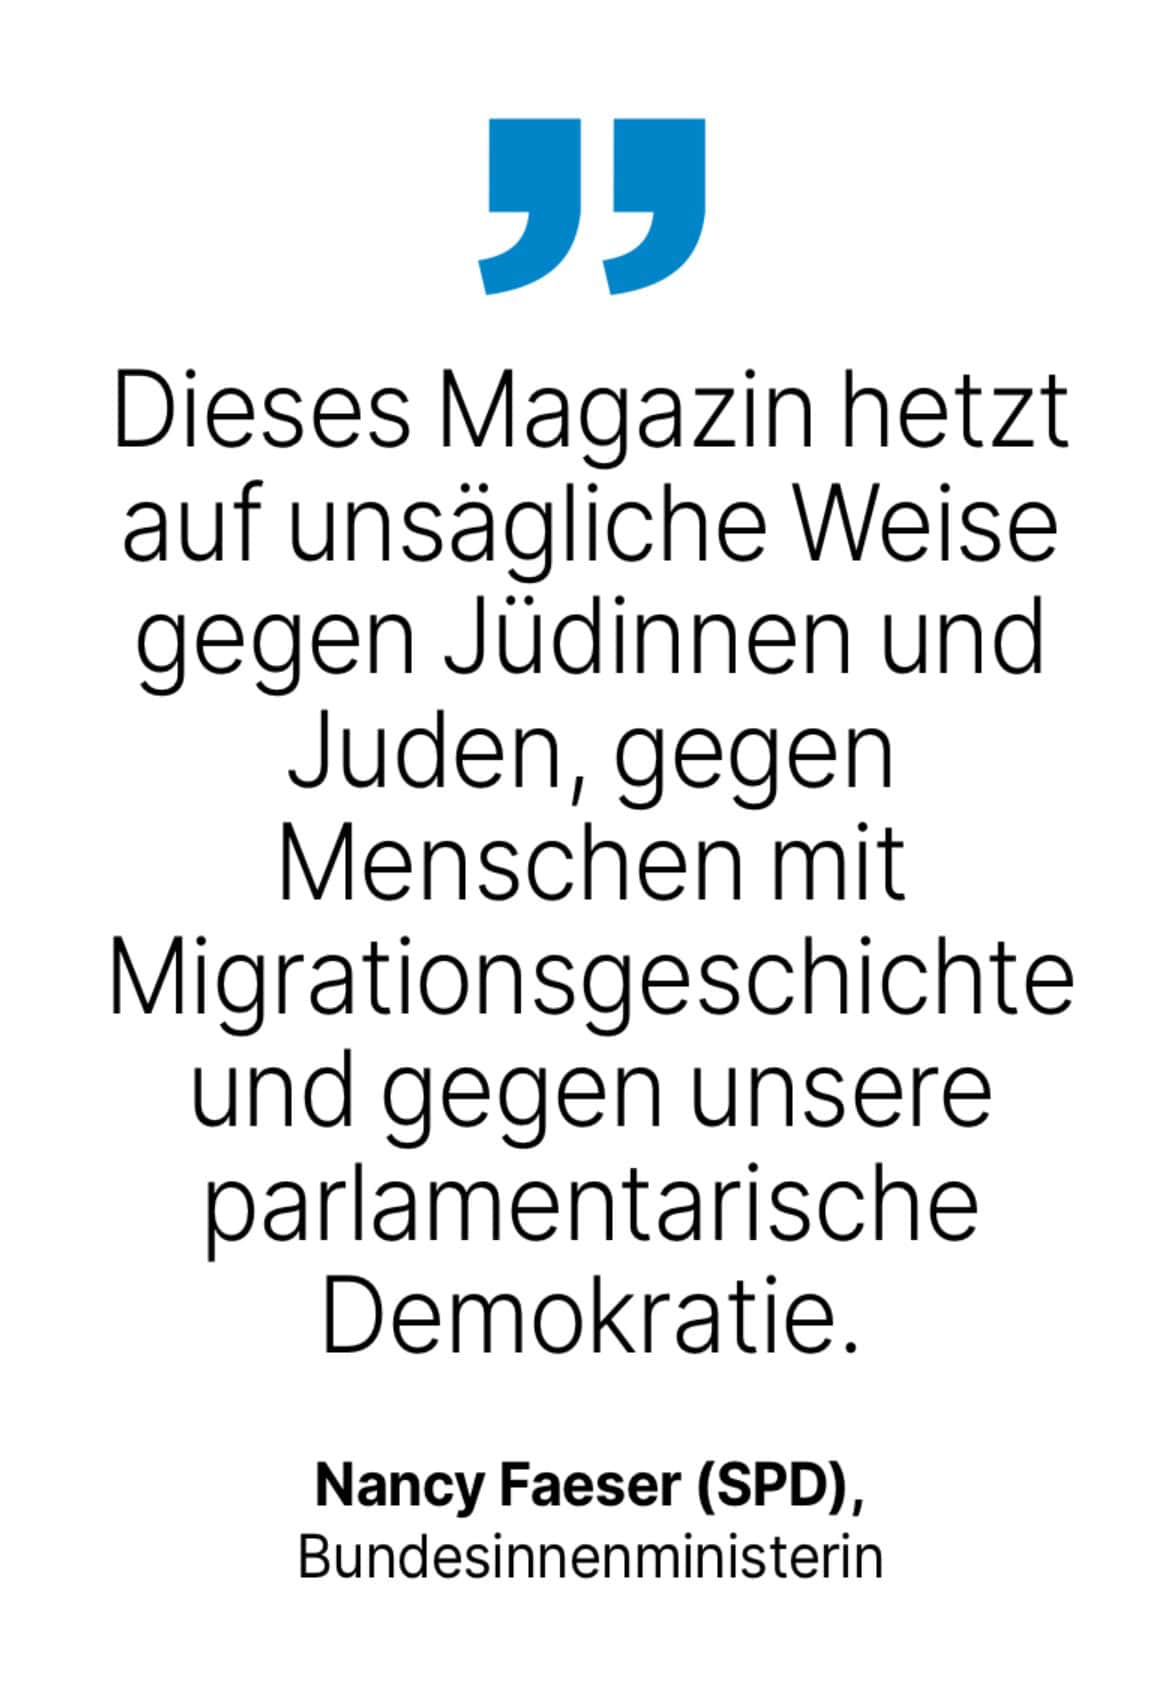 Nancy Faeser (SPD), Bundesinnenministerin: Dieses Magazin hetzt auf unsägliche Weise gegen Jüdinnen und Juden, gegen Menschen mit Migrationsgeschichte und gegen unsere parlamentarische Demokratie.